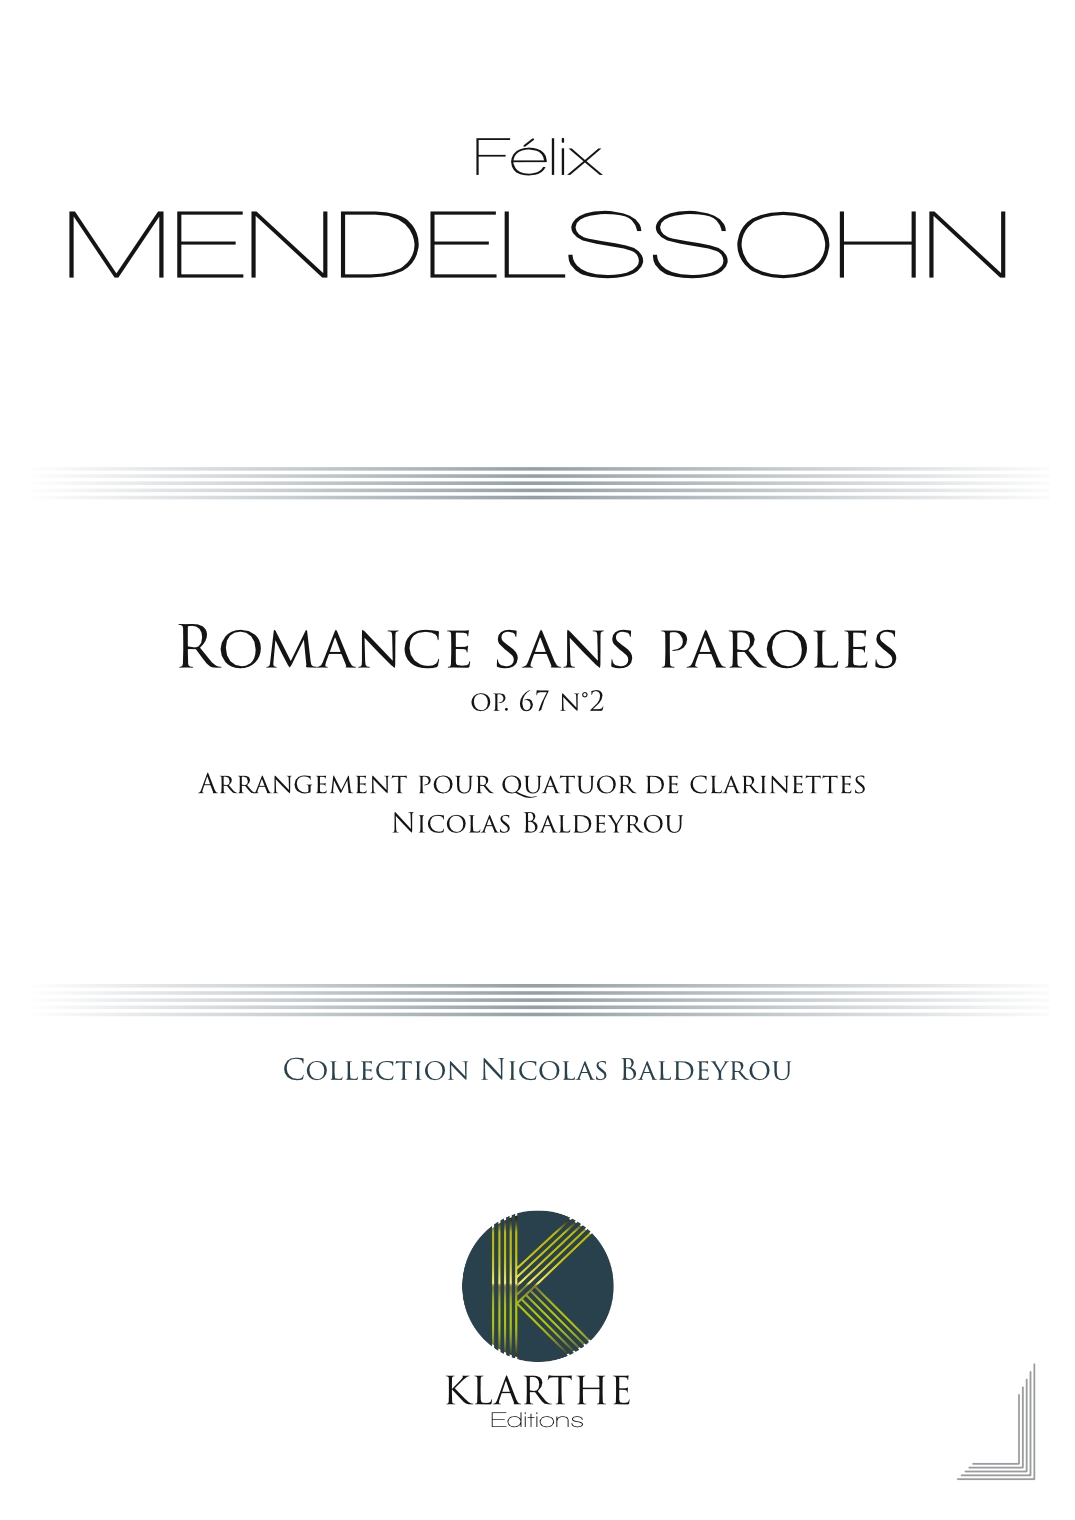 Romance sans paroles opus 67, n°2 (MENDELSSOHN-BARTHOLDY FELIX)